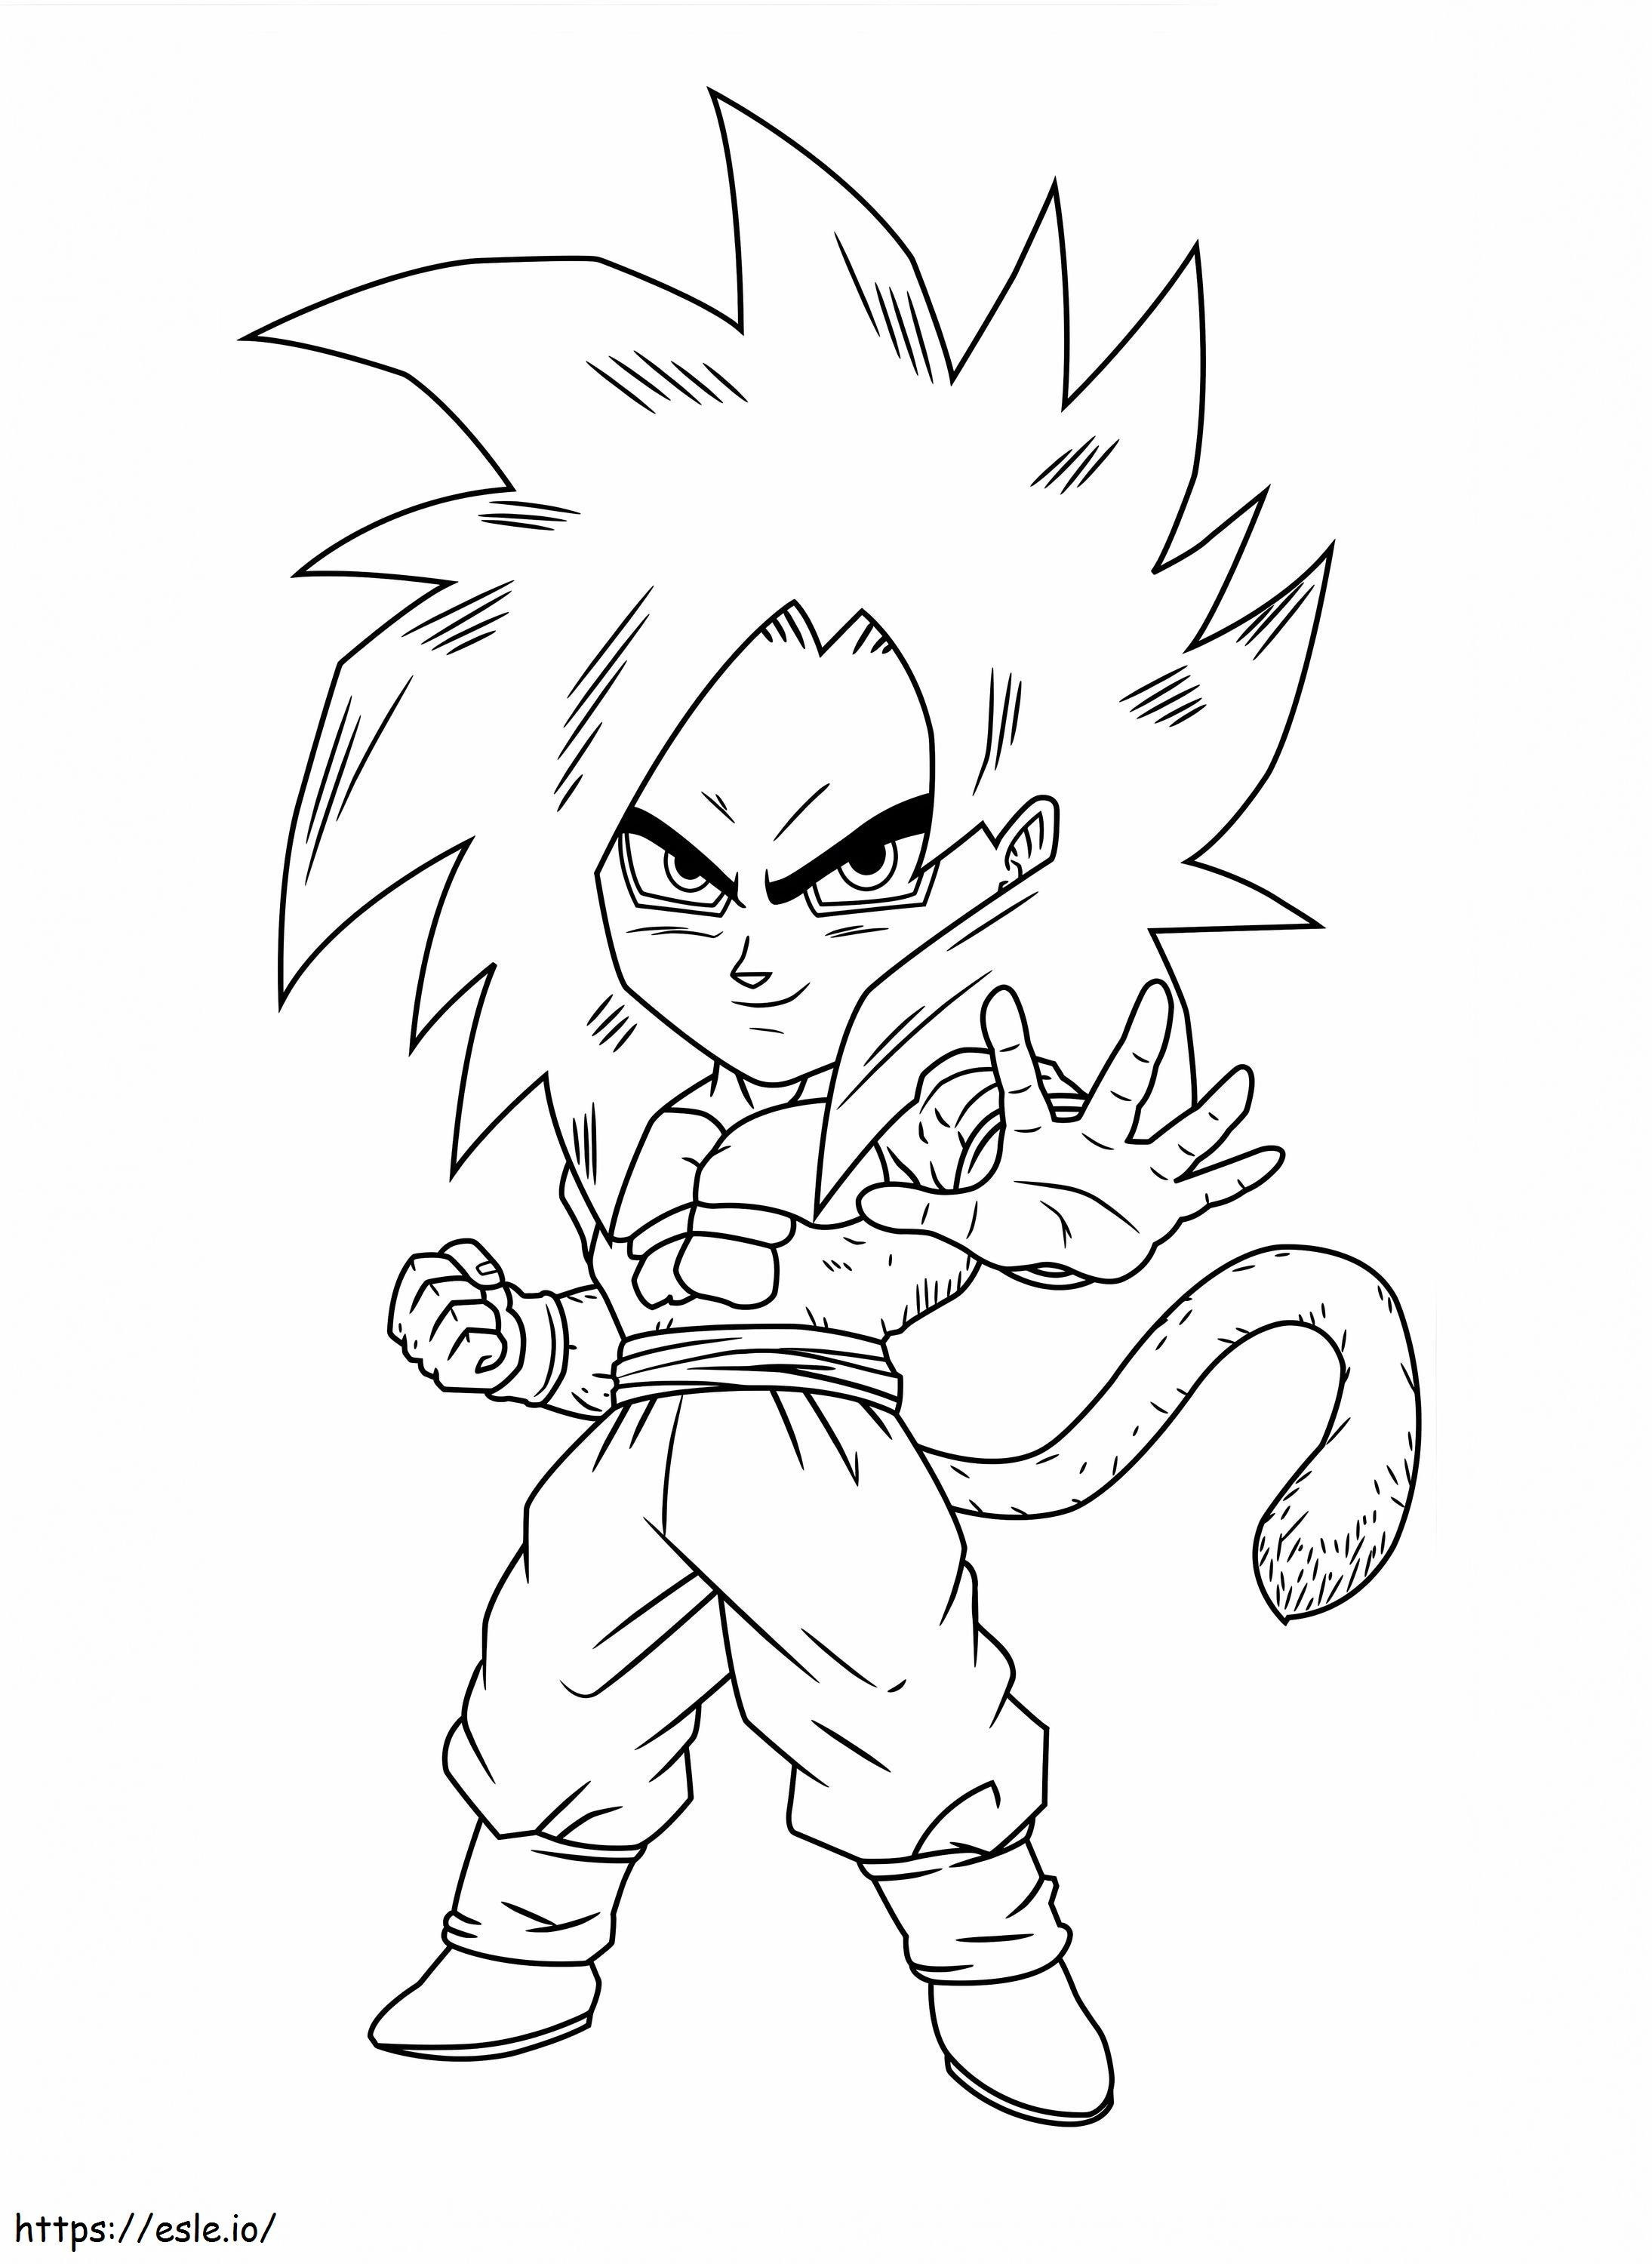 1551080619 226 2267467 Kid Goku Fan Picture Chibi Goku coloring page